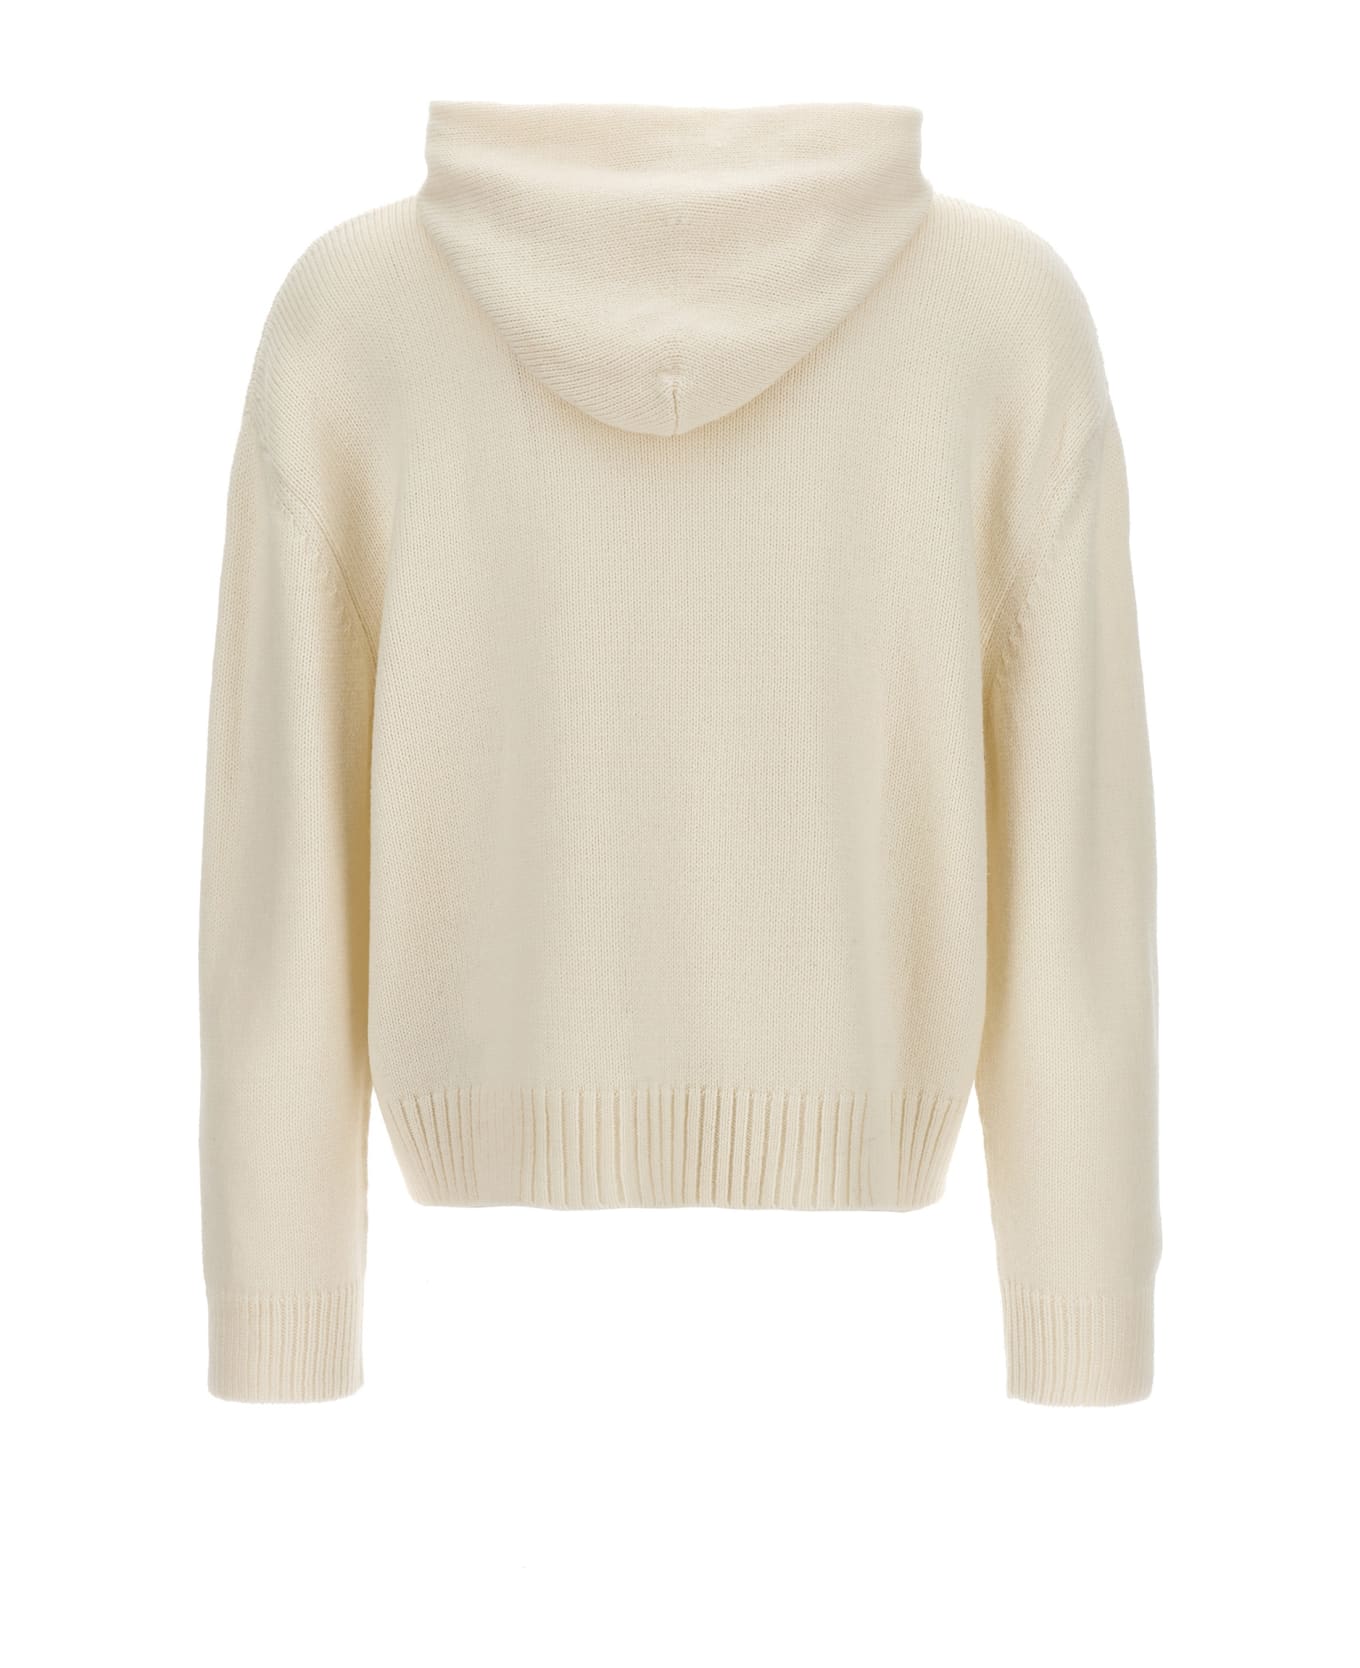 MM6 Maison Margiela Hooded Sweater - White/Black ニットウェア